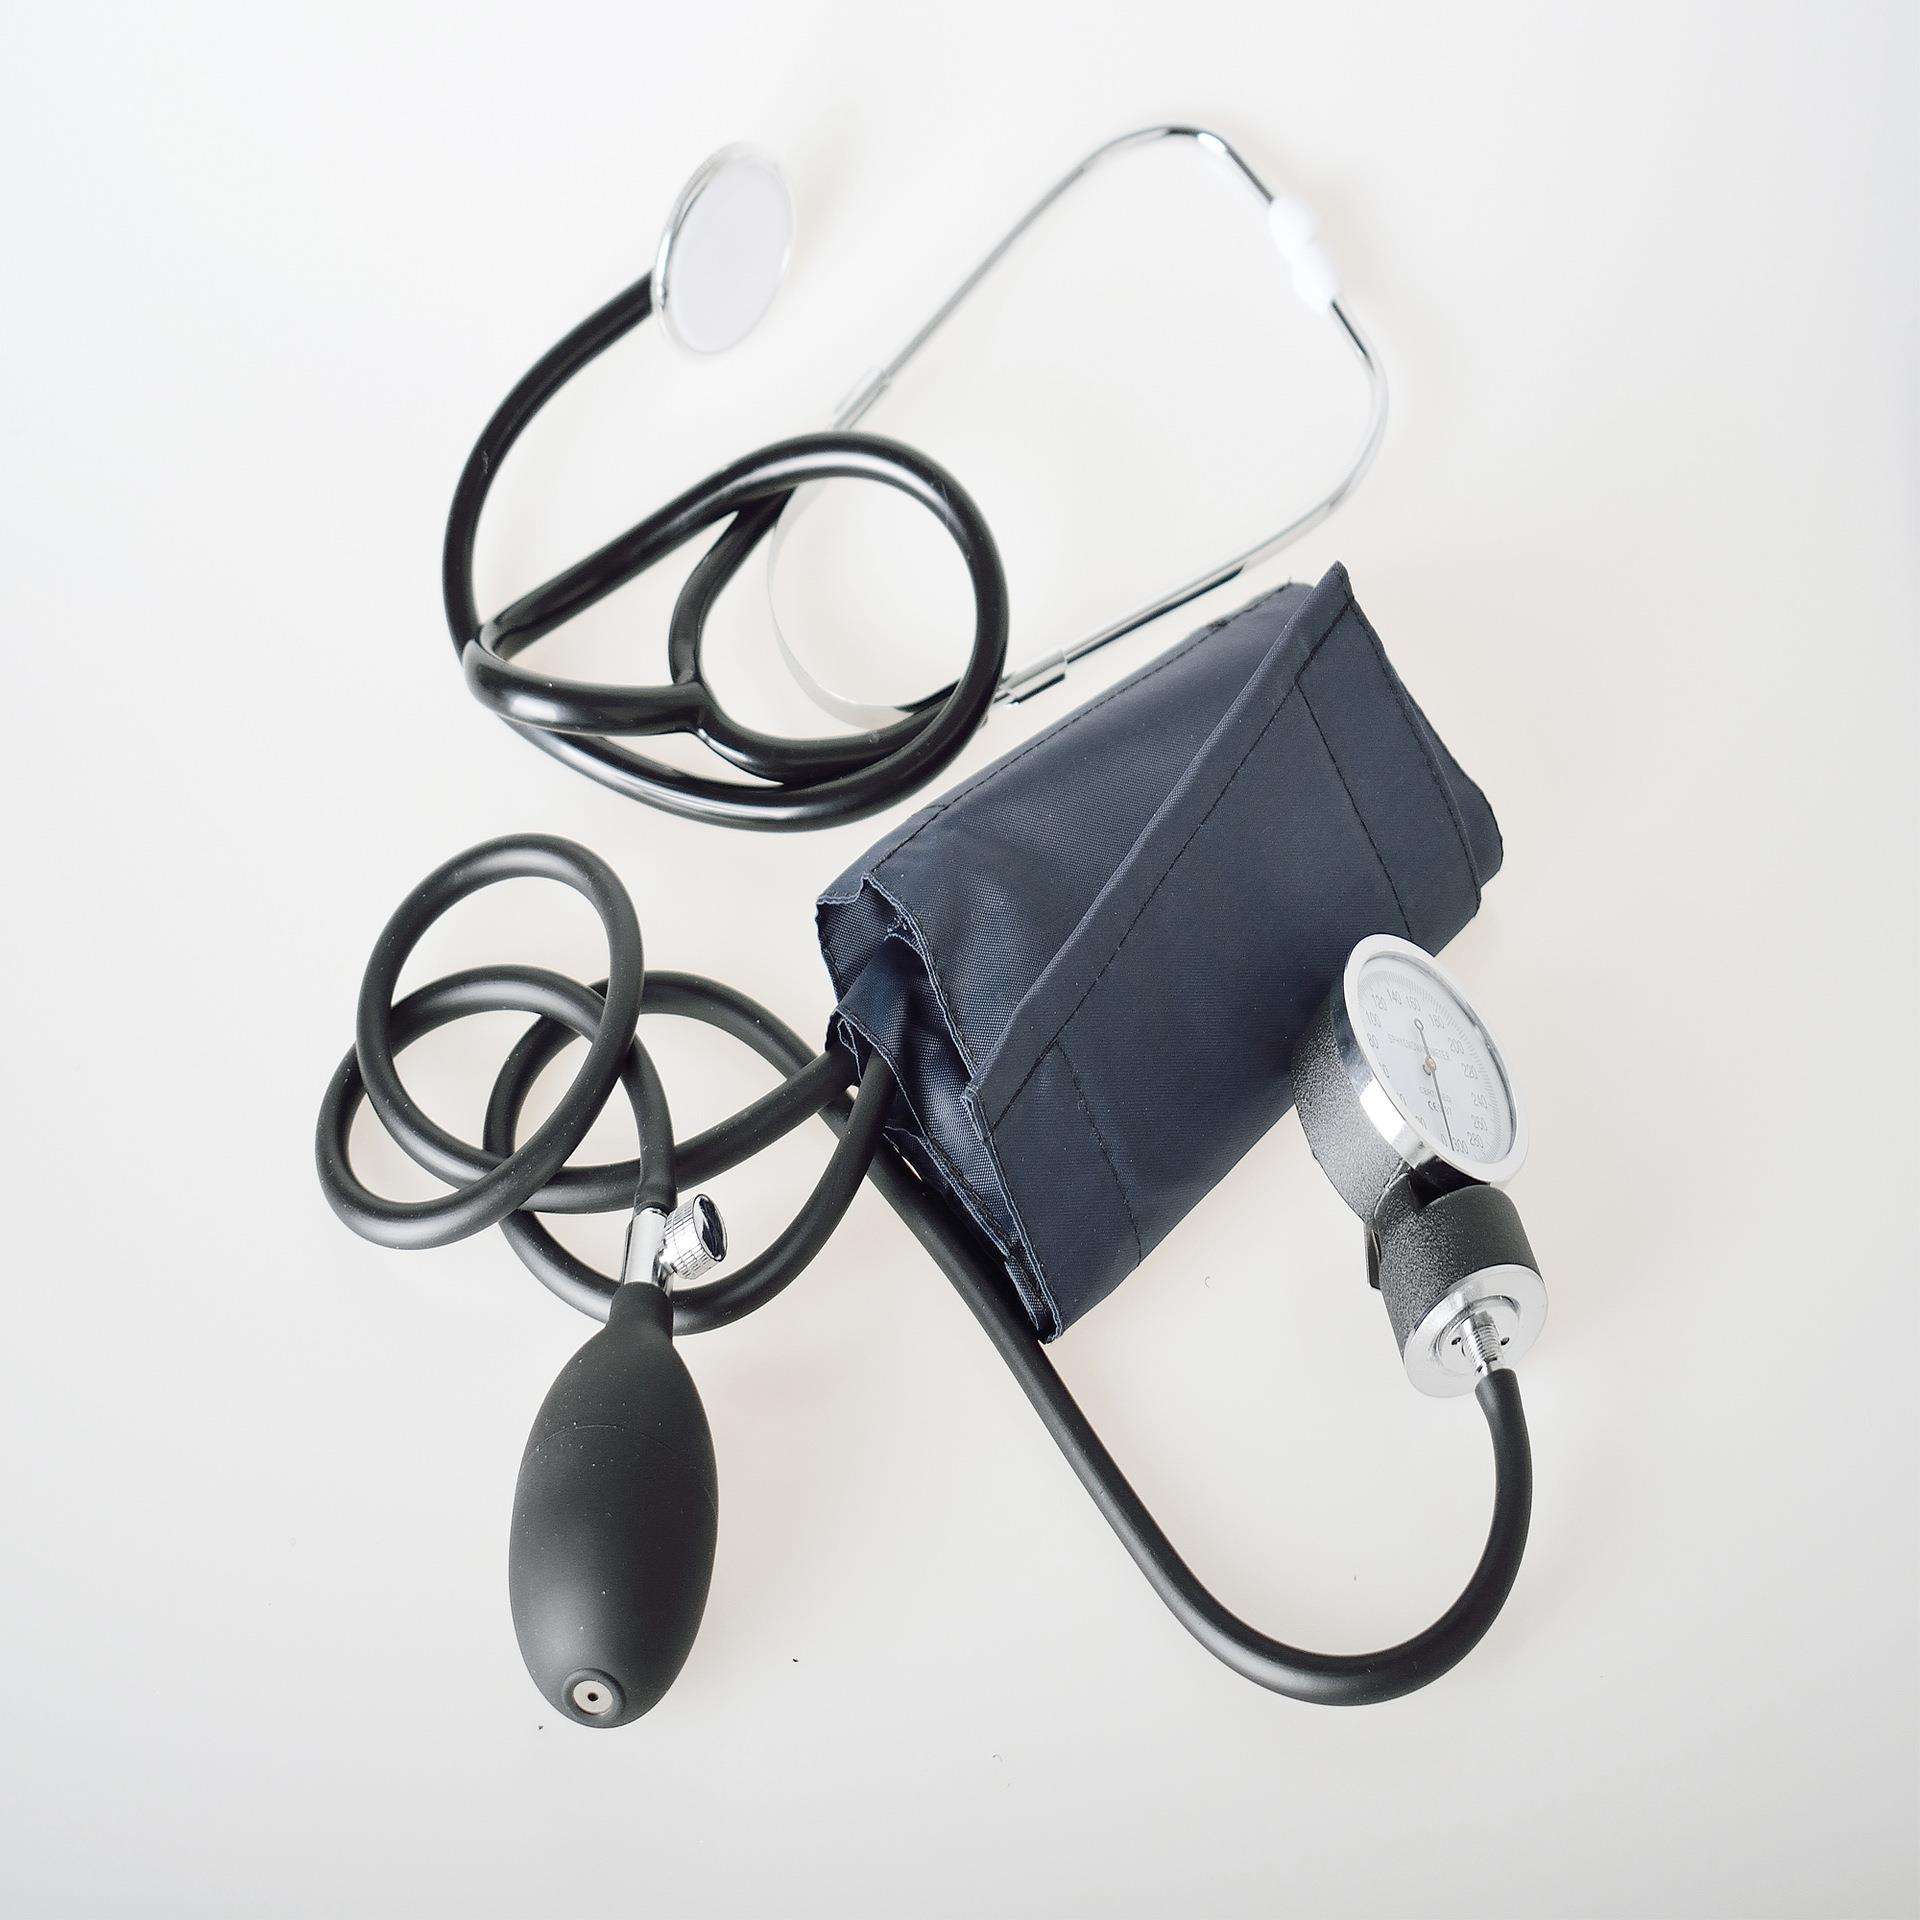 Sfigmomanometro manuale per uso medico